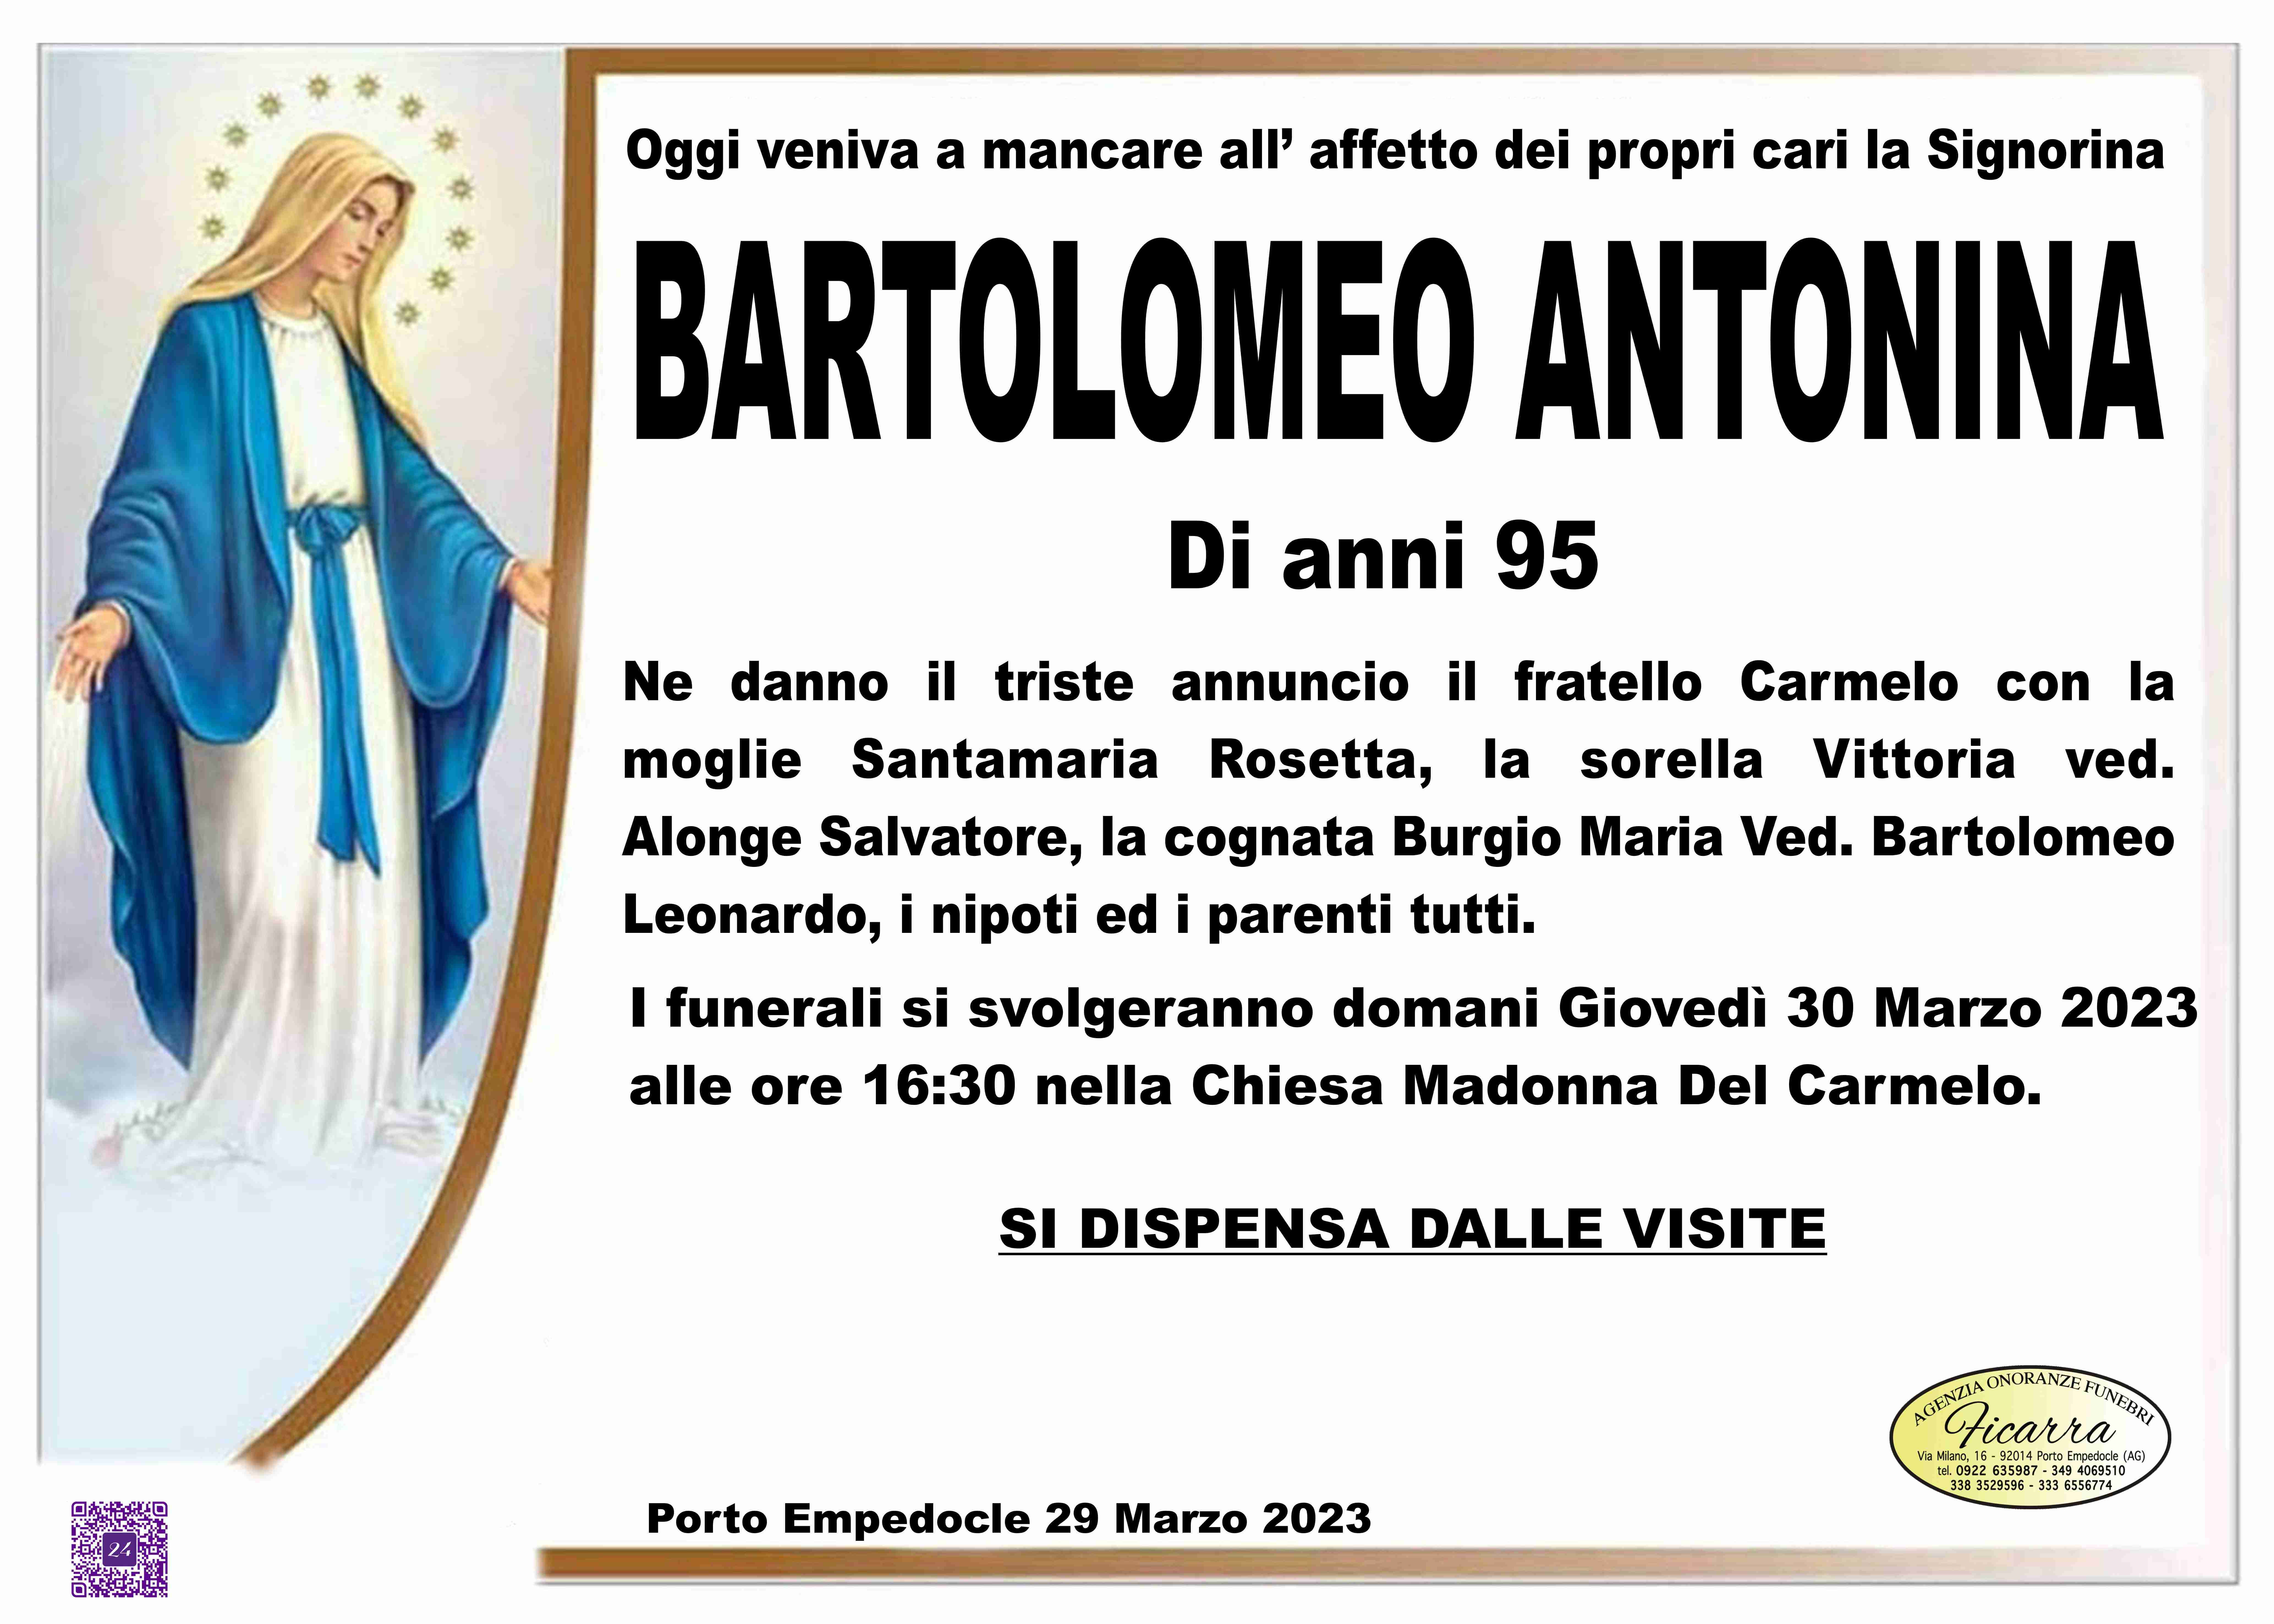 Antonina Bartolomeo